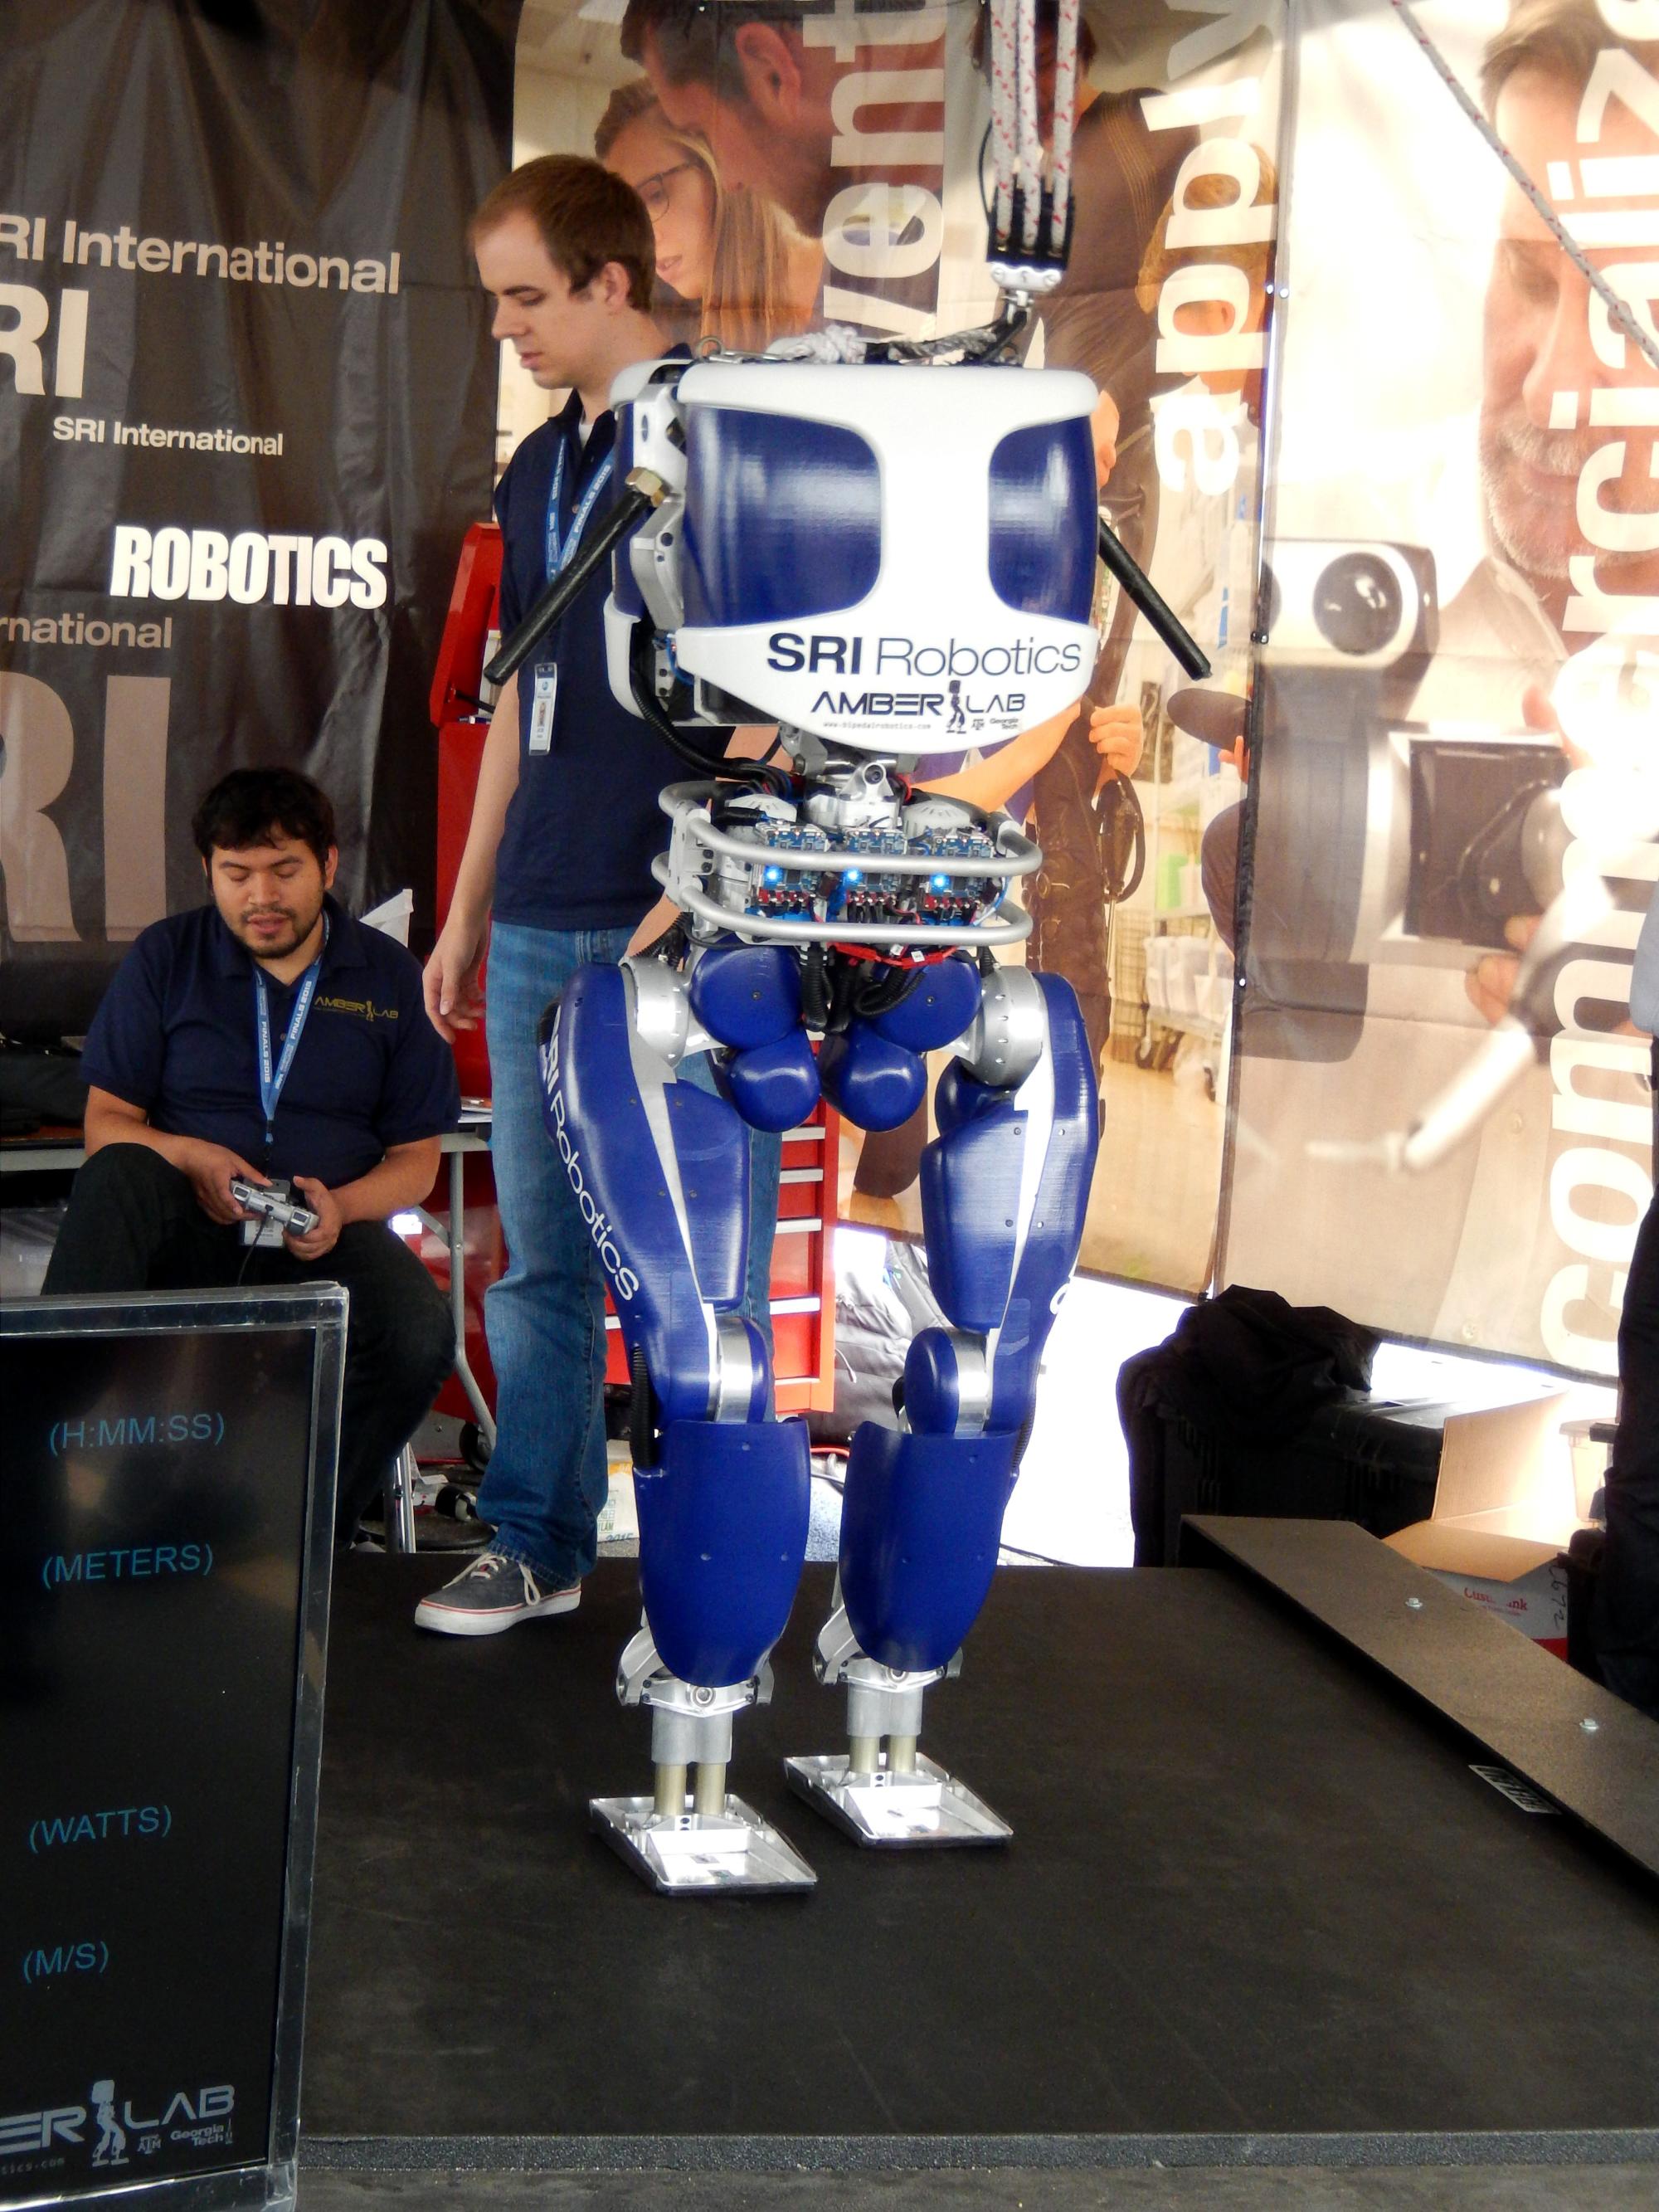 Robots - DRC SRI